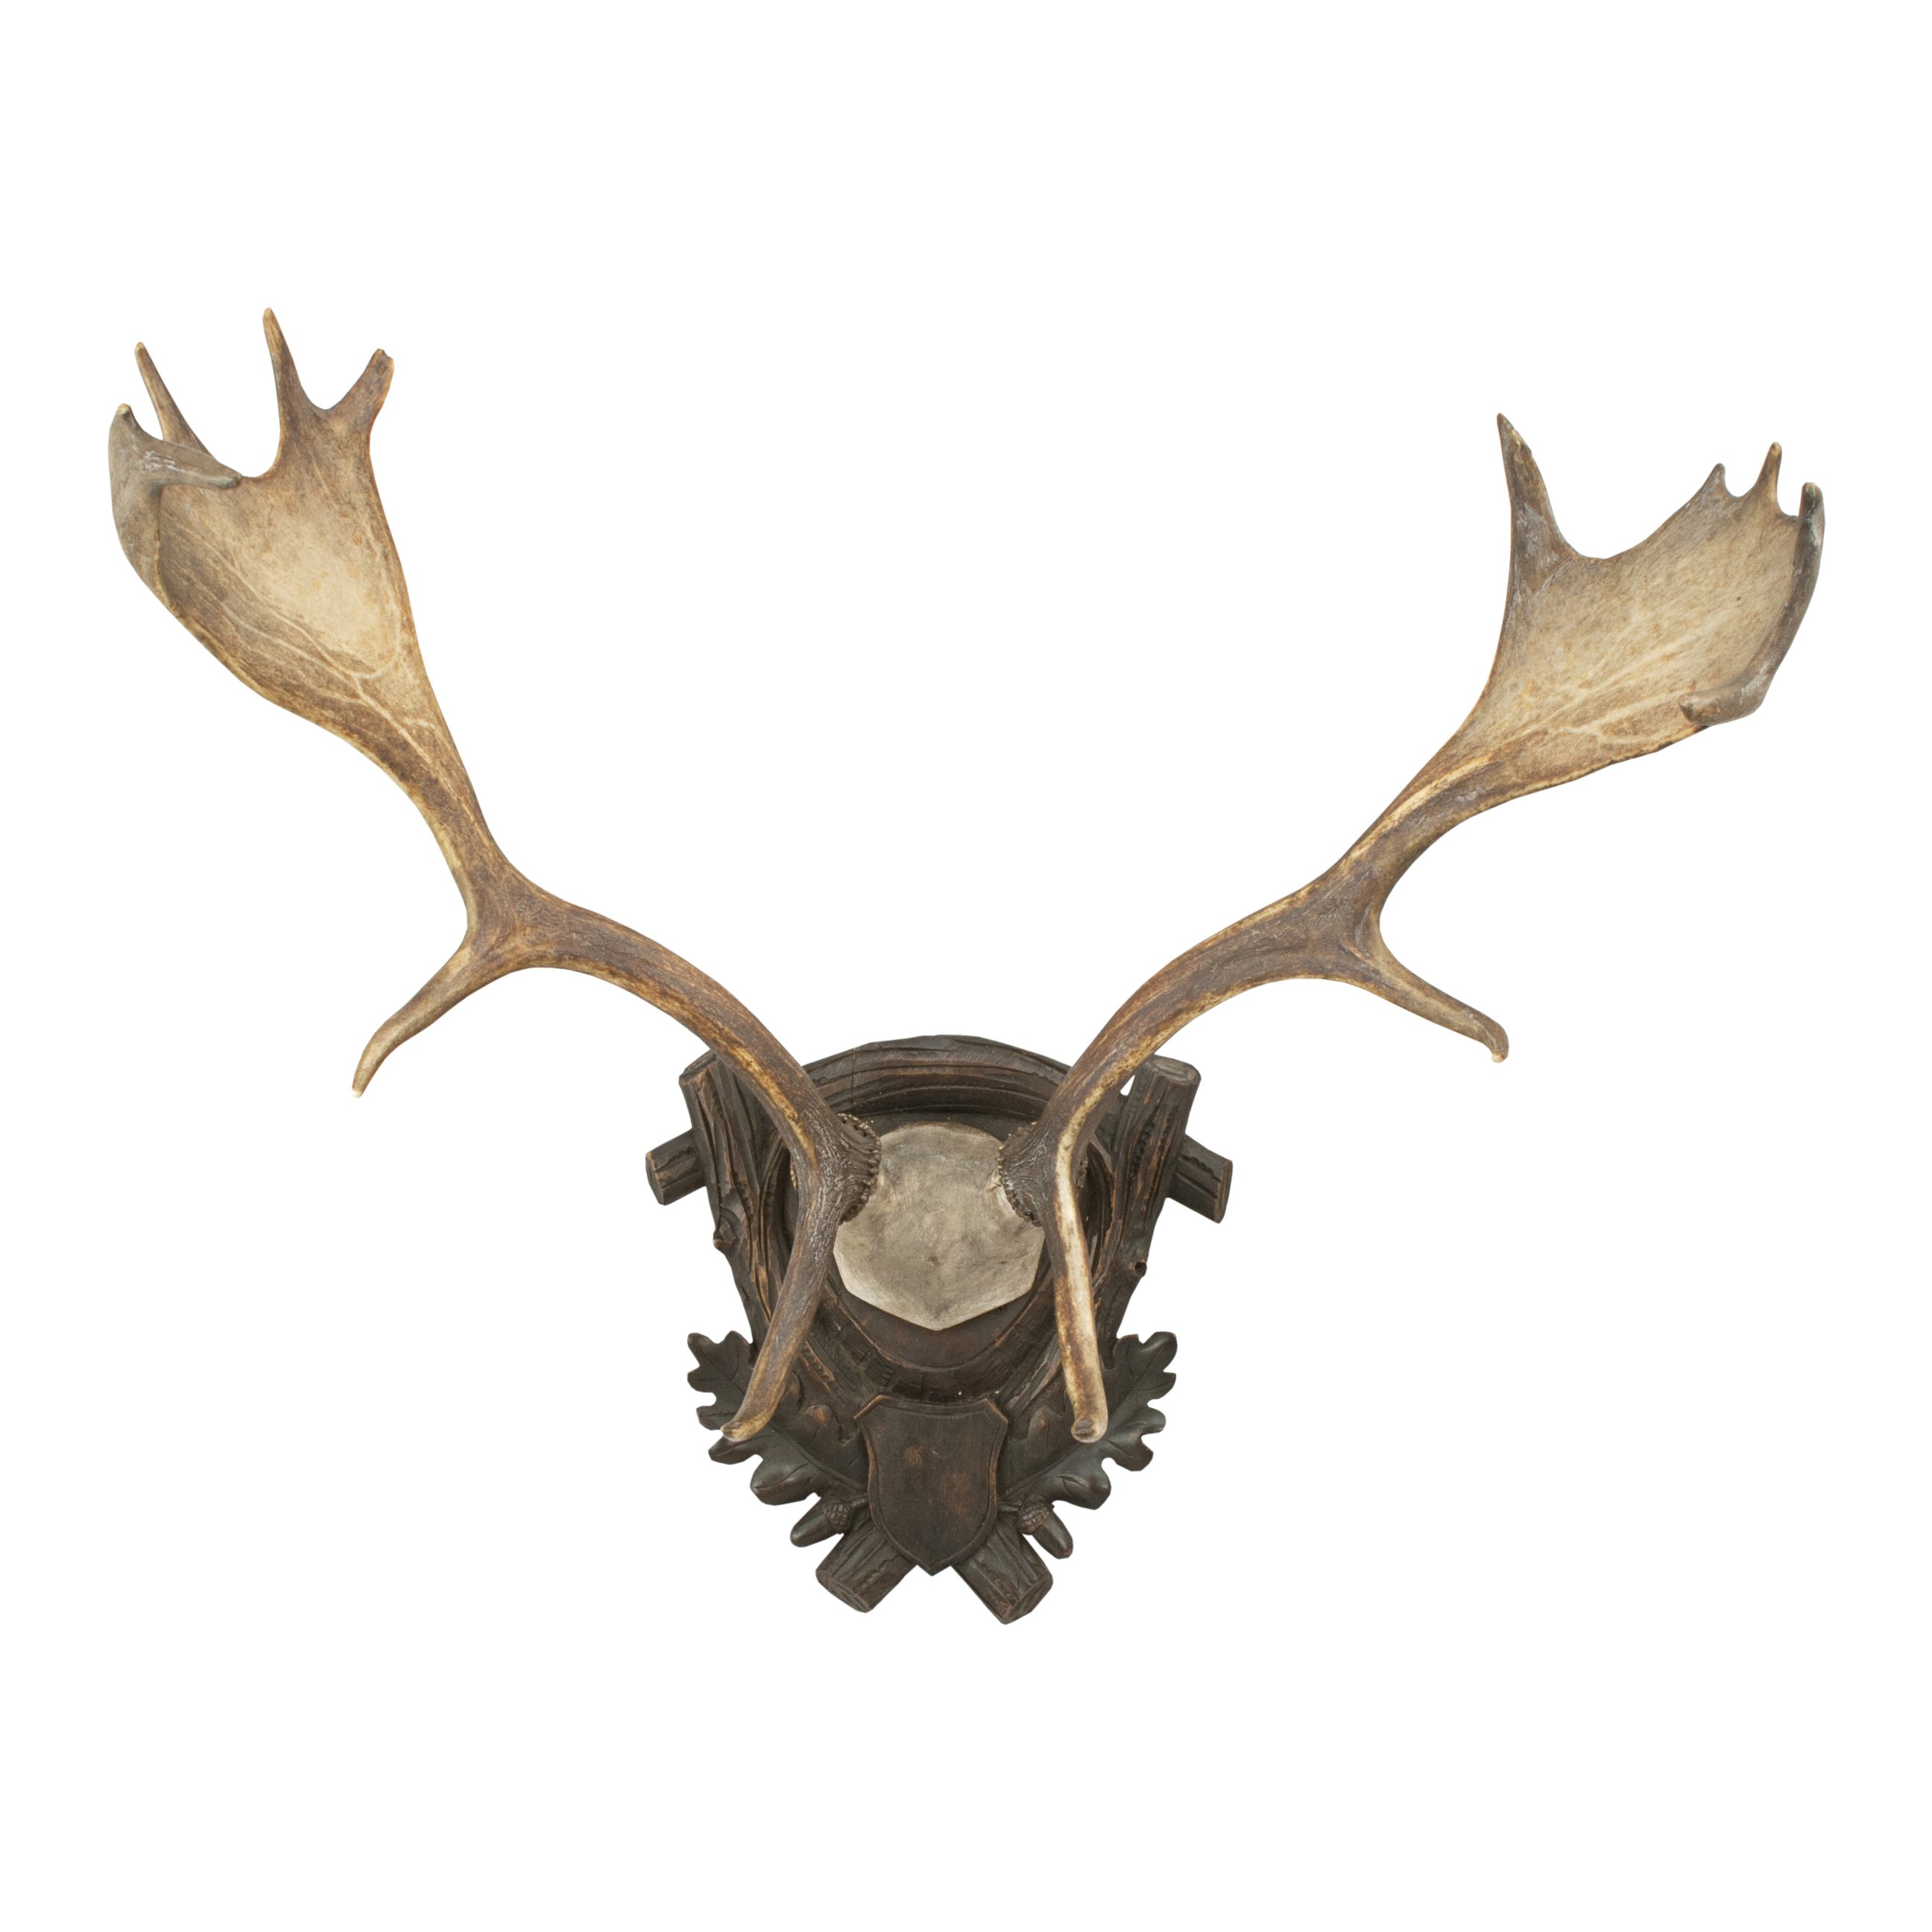 Pair of Elk, Moose Antlers For Sale at 1stdibs